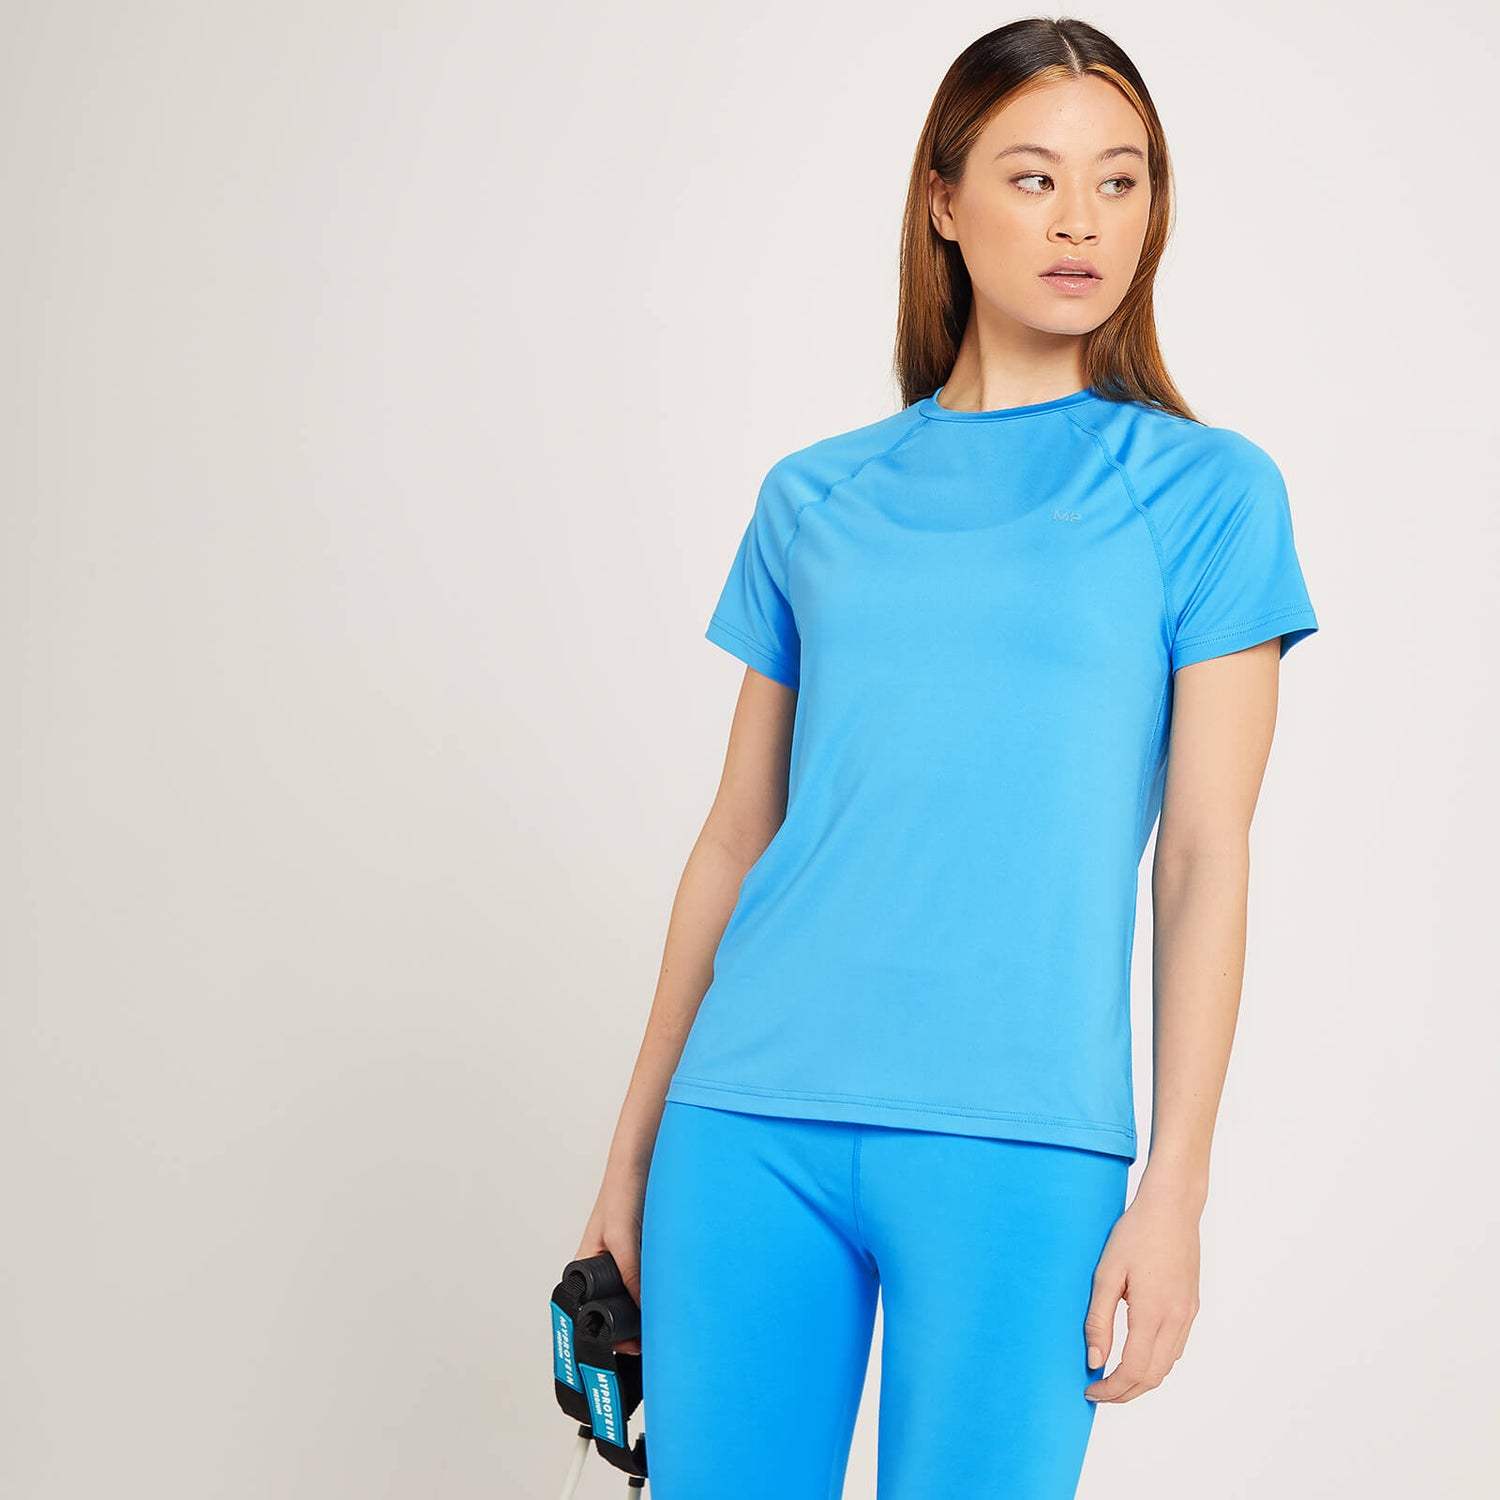 MP ženska majica za trening z grafičnim motivom Linear Mark - svetlo modra - XS